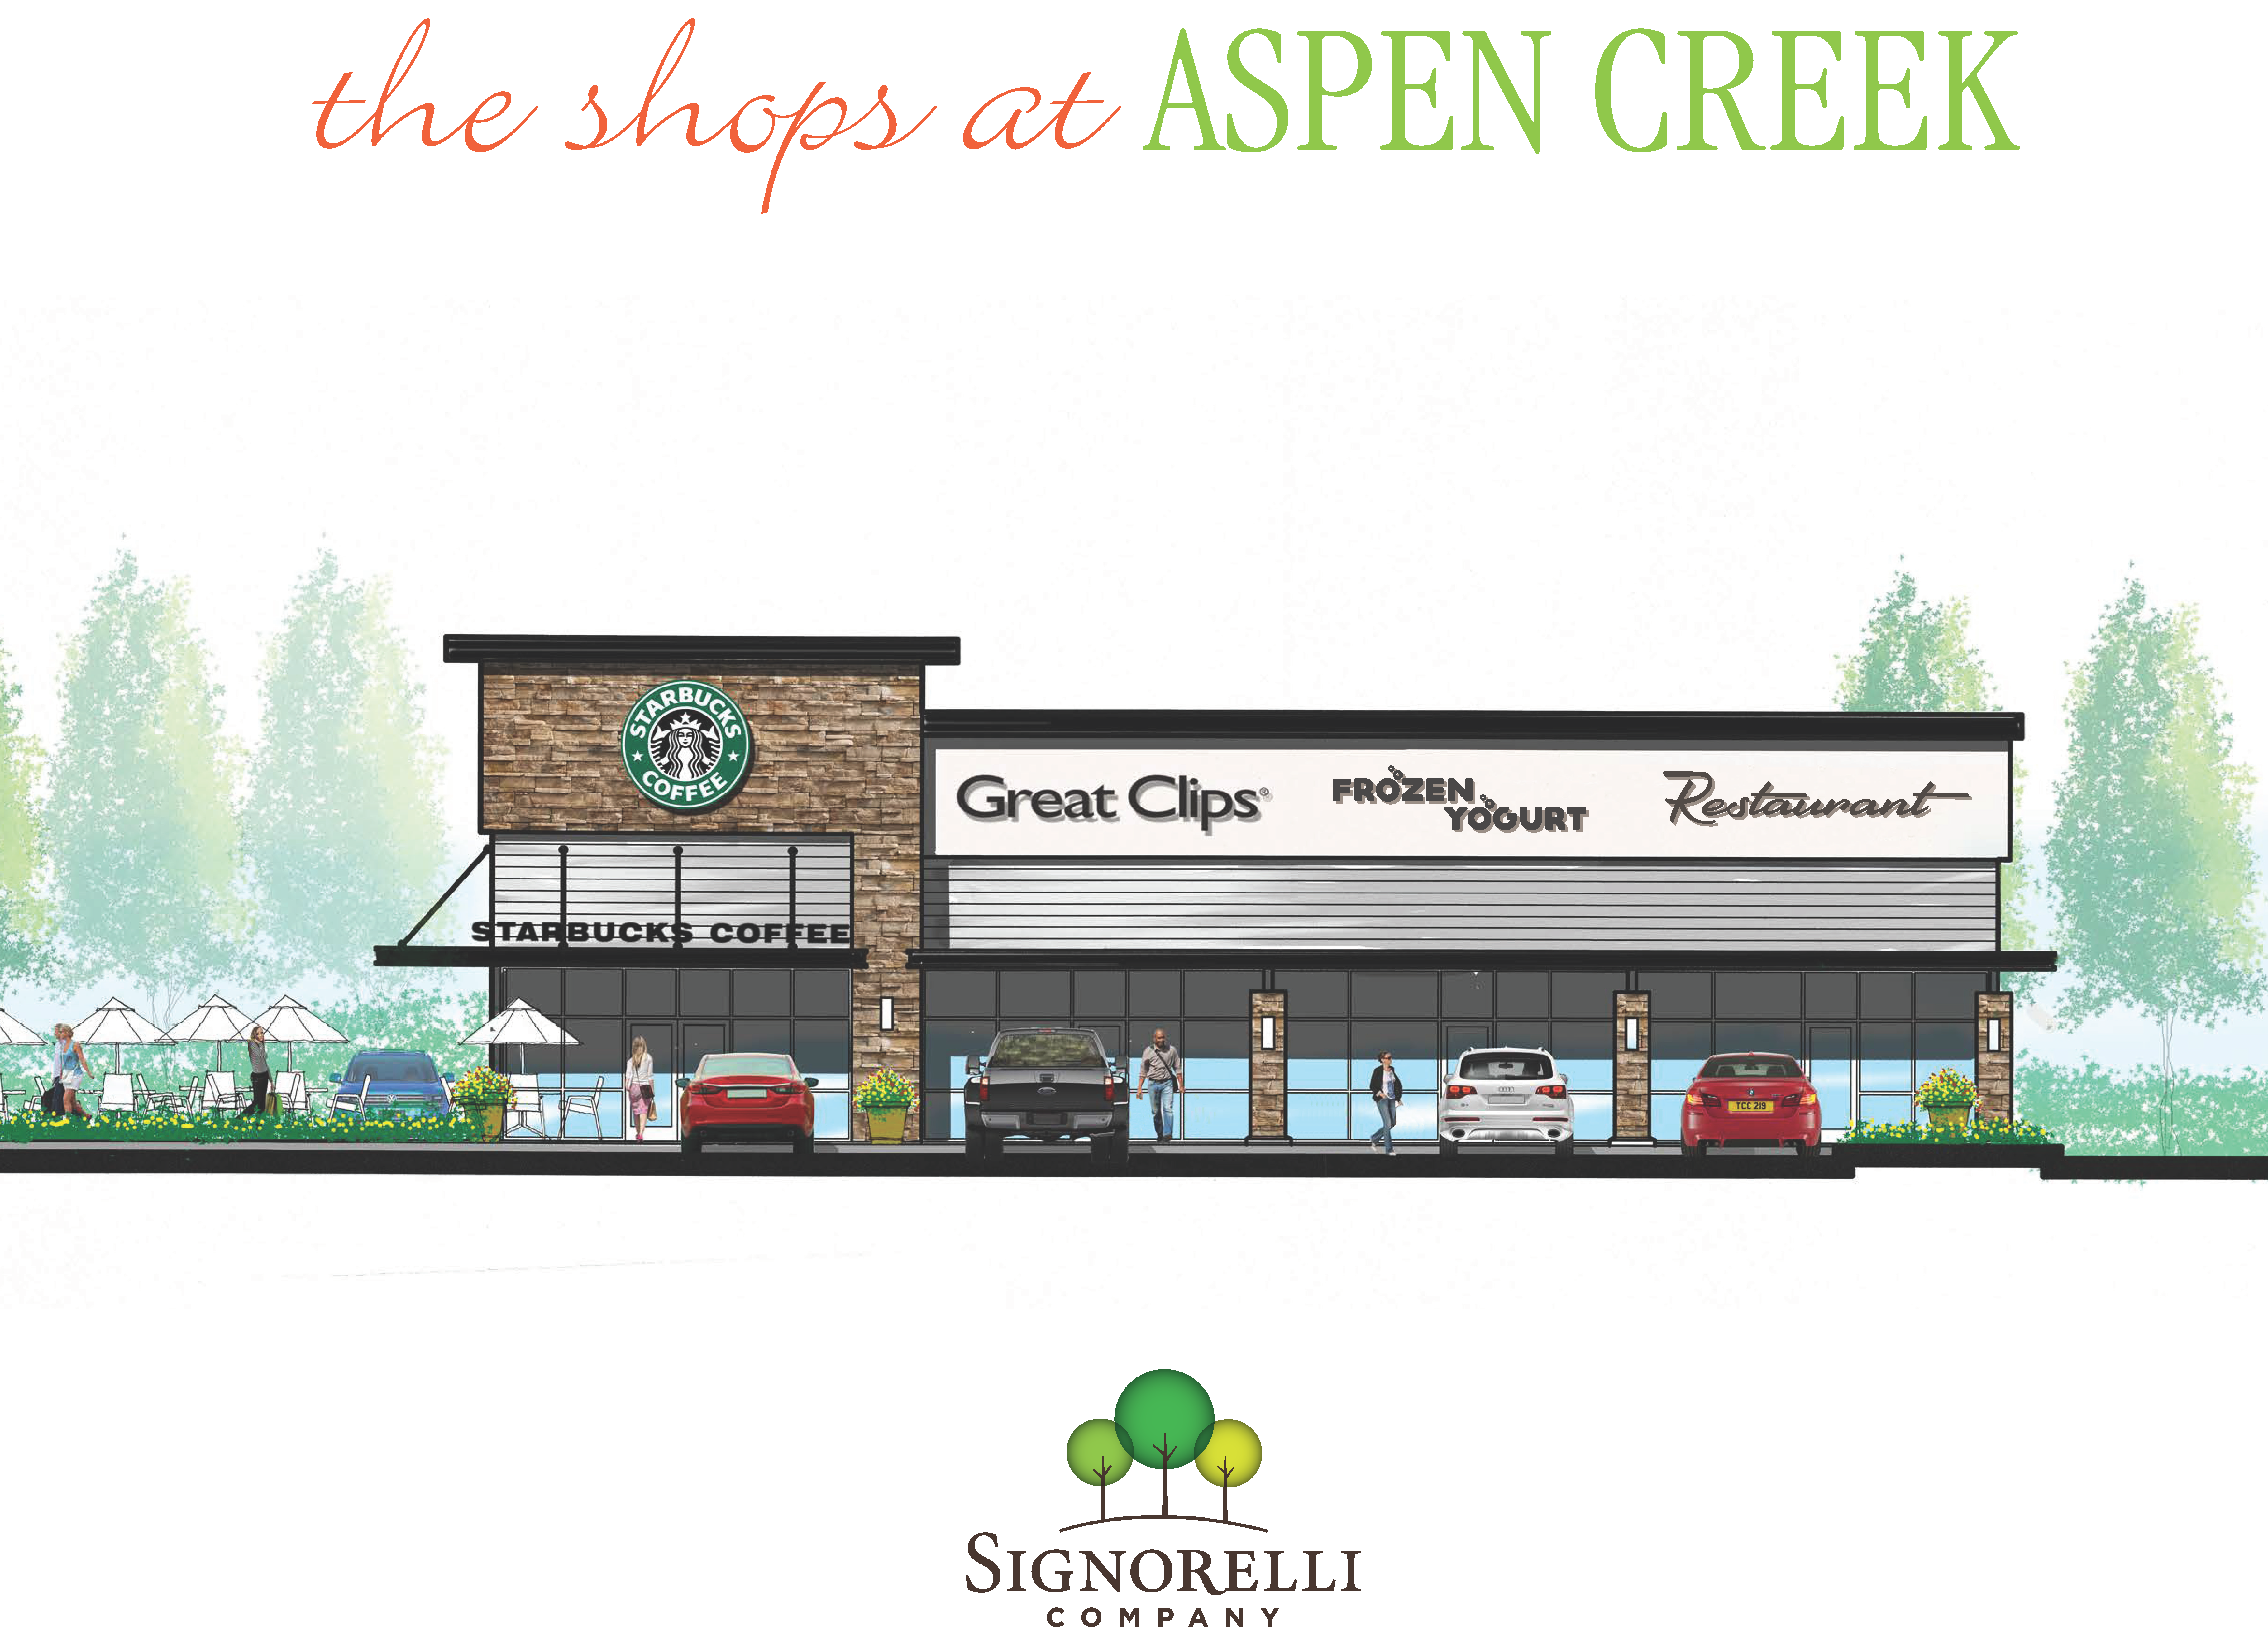 The Shops at Aspen Creek